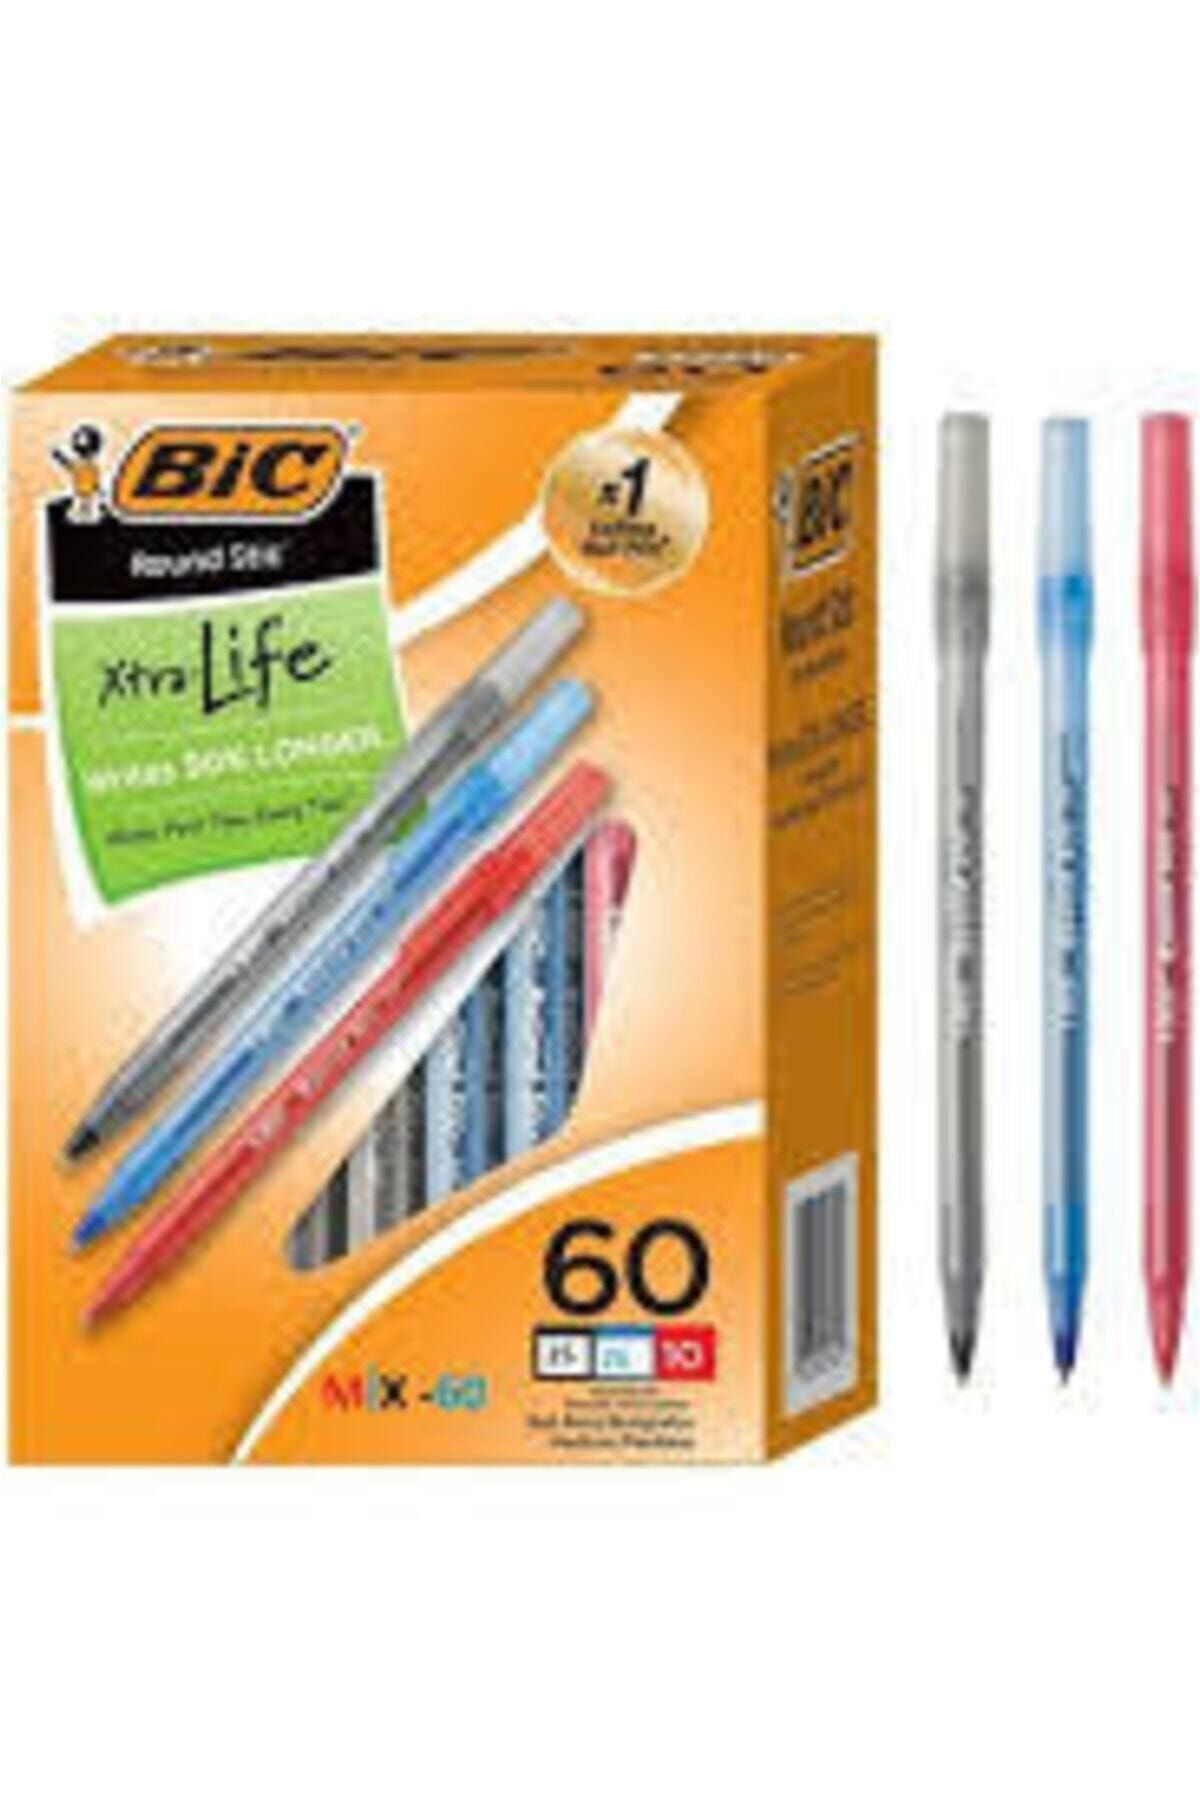 Bic Round Tükenmez Kalem 60 'lı Set ( 20 Siyah+20 Kırmızı+20 Mavi ) 3 Renk-60 Adet